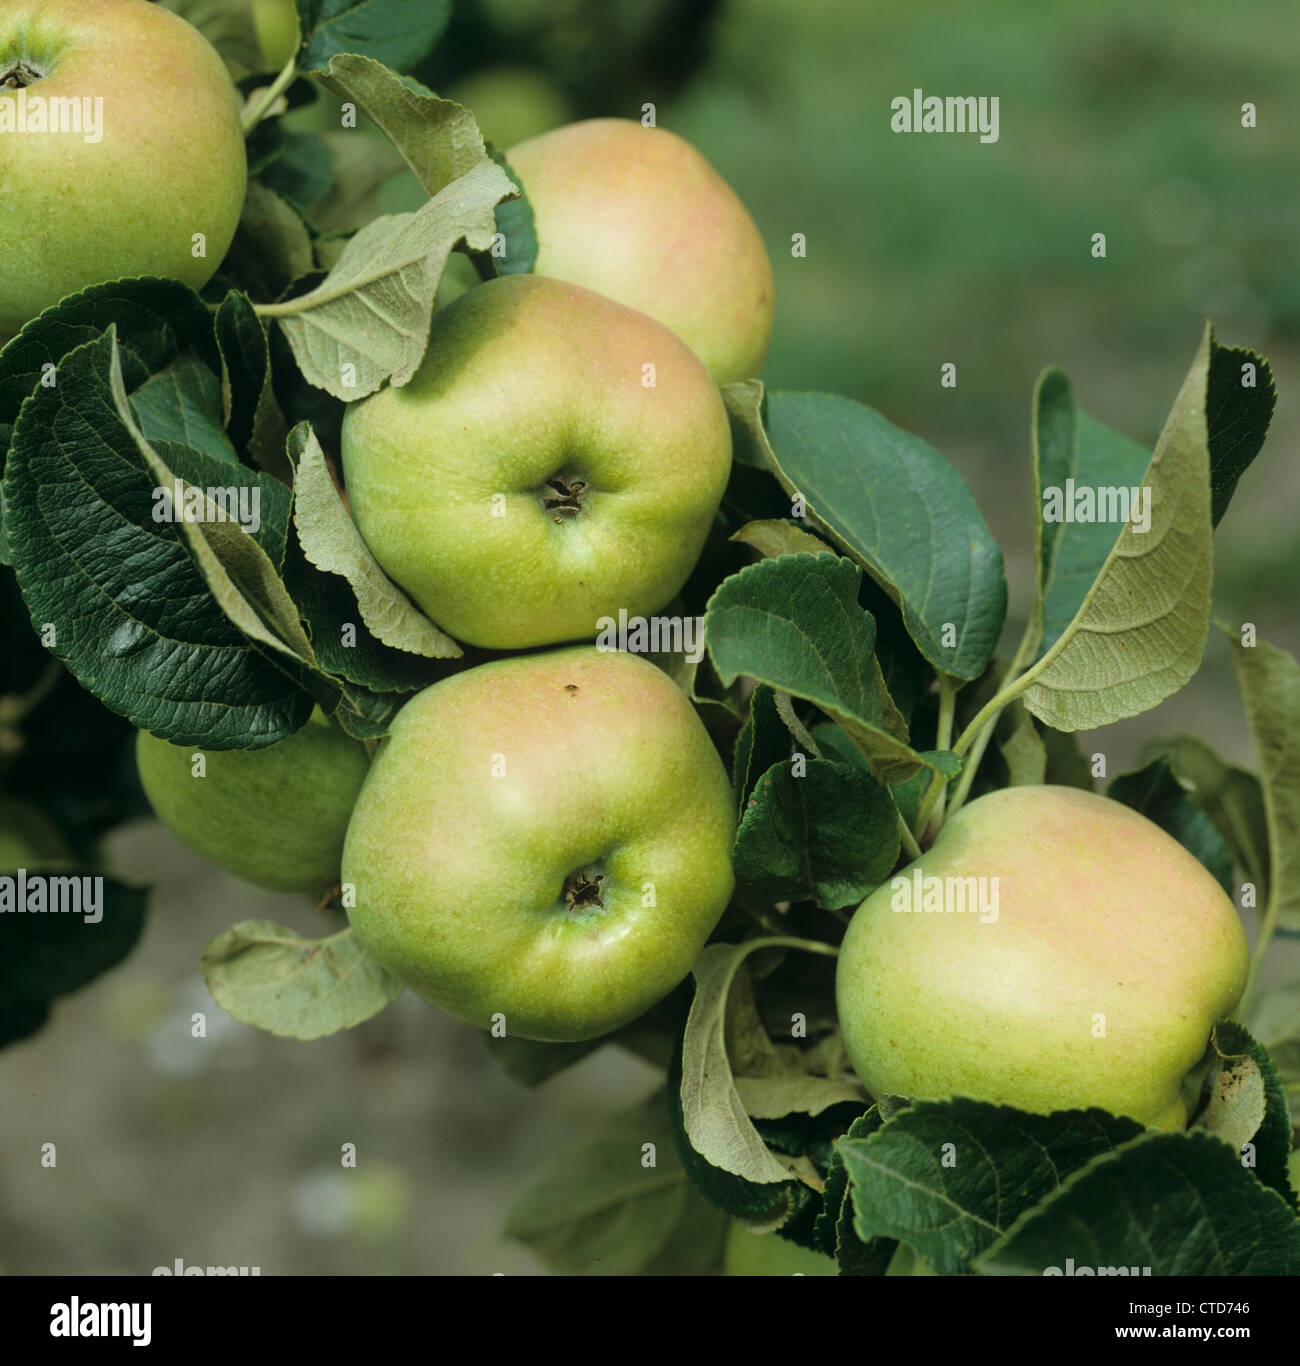 Coppia Bramley apple frutta (Malus communis) sulla struttura ad albero Foto Stock